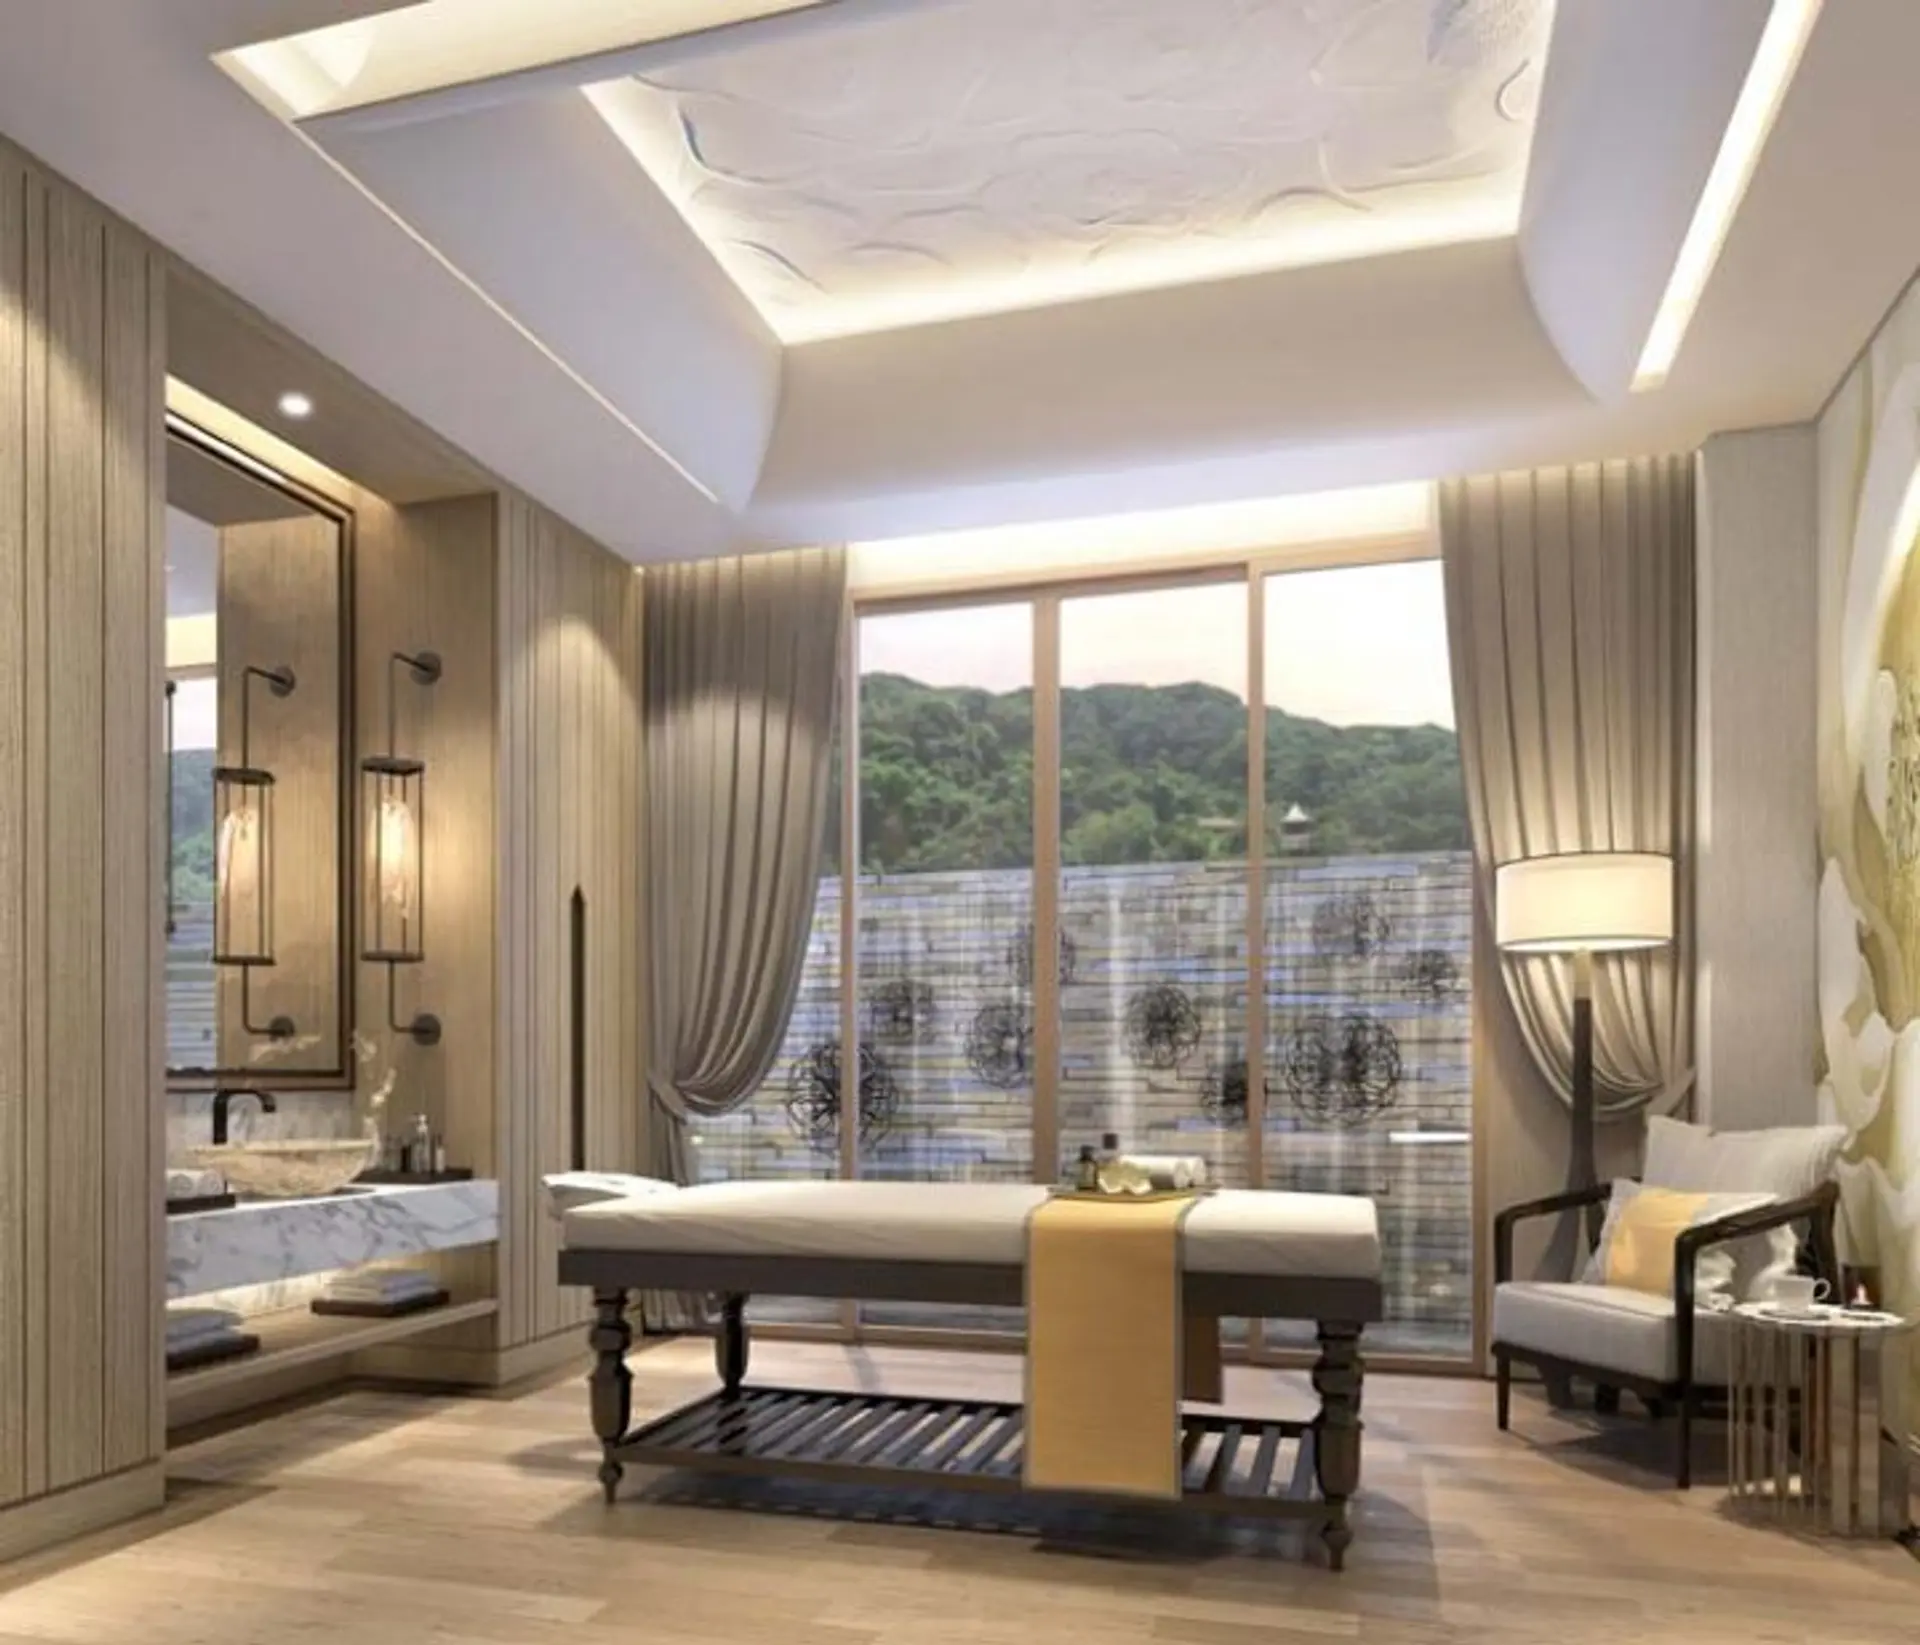 Hotels Articles - Phuket’s new luxury resort